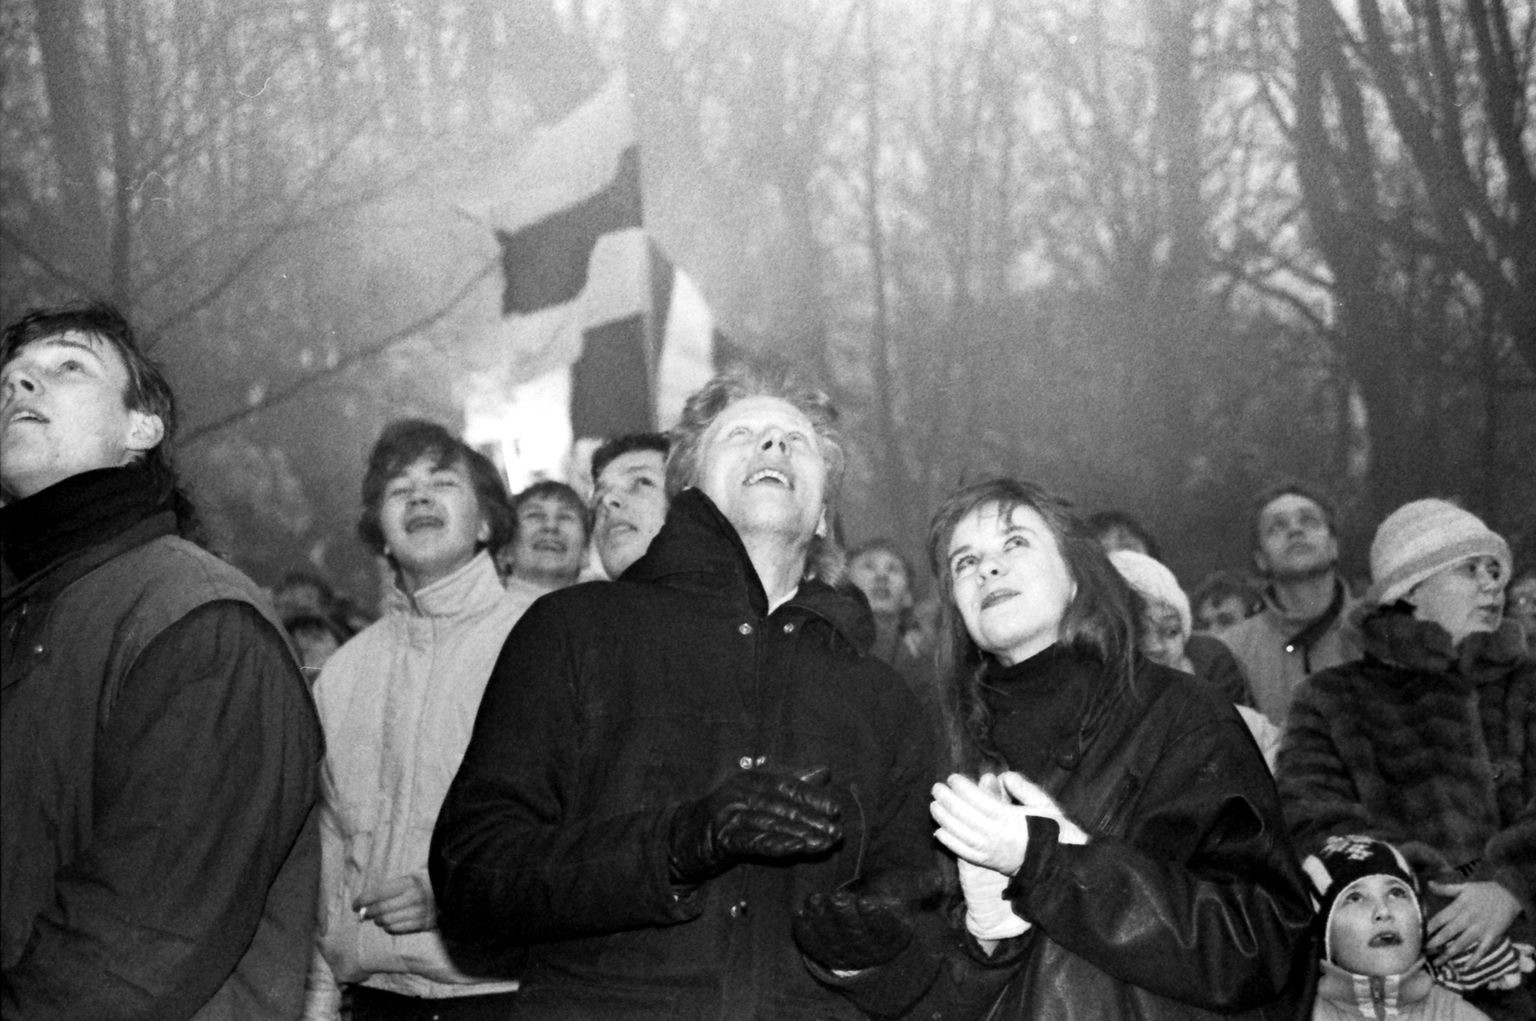 Esimest korda üle pika aja heisati sinimustvalge Toompeal 24. veebruaril  1989.